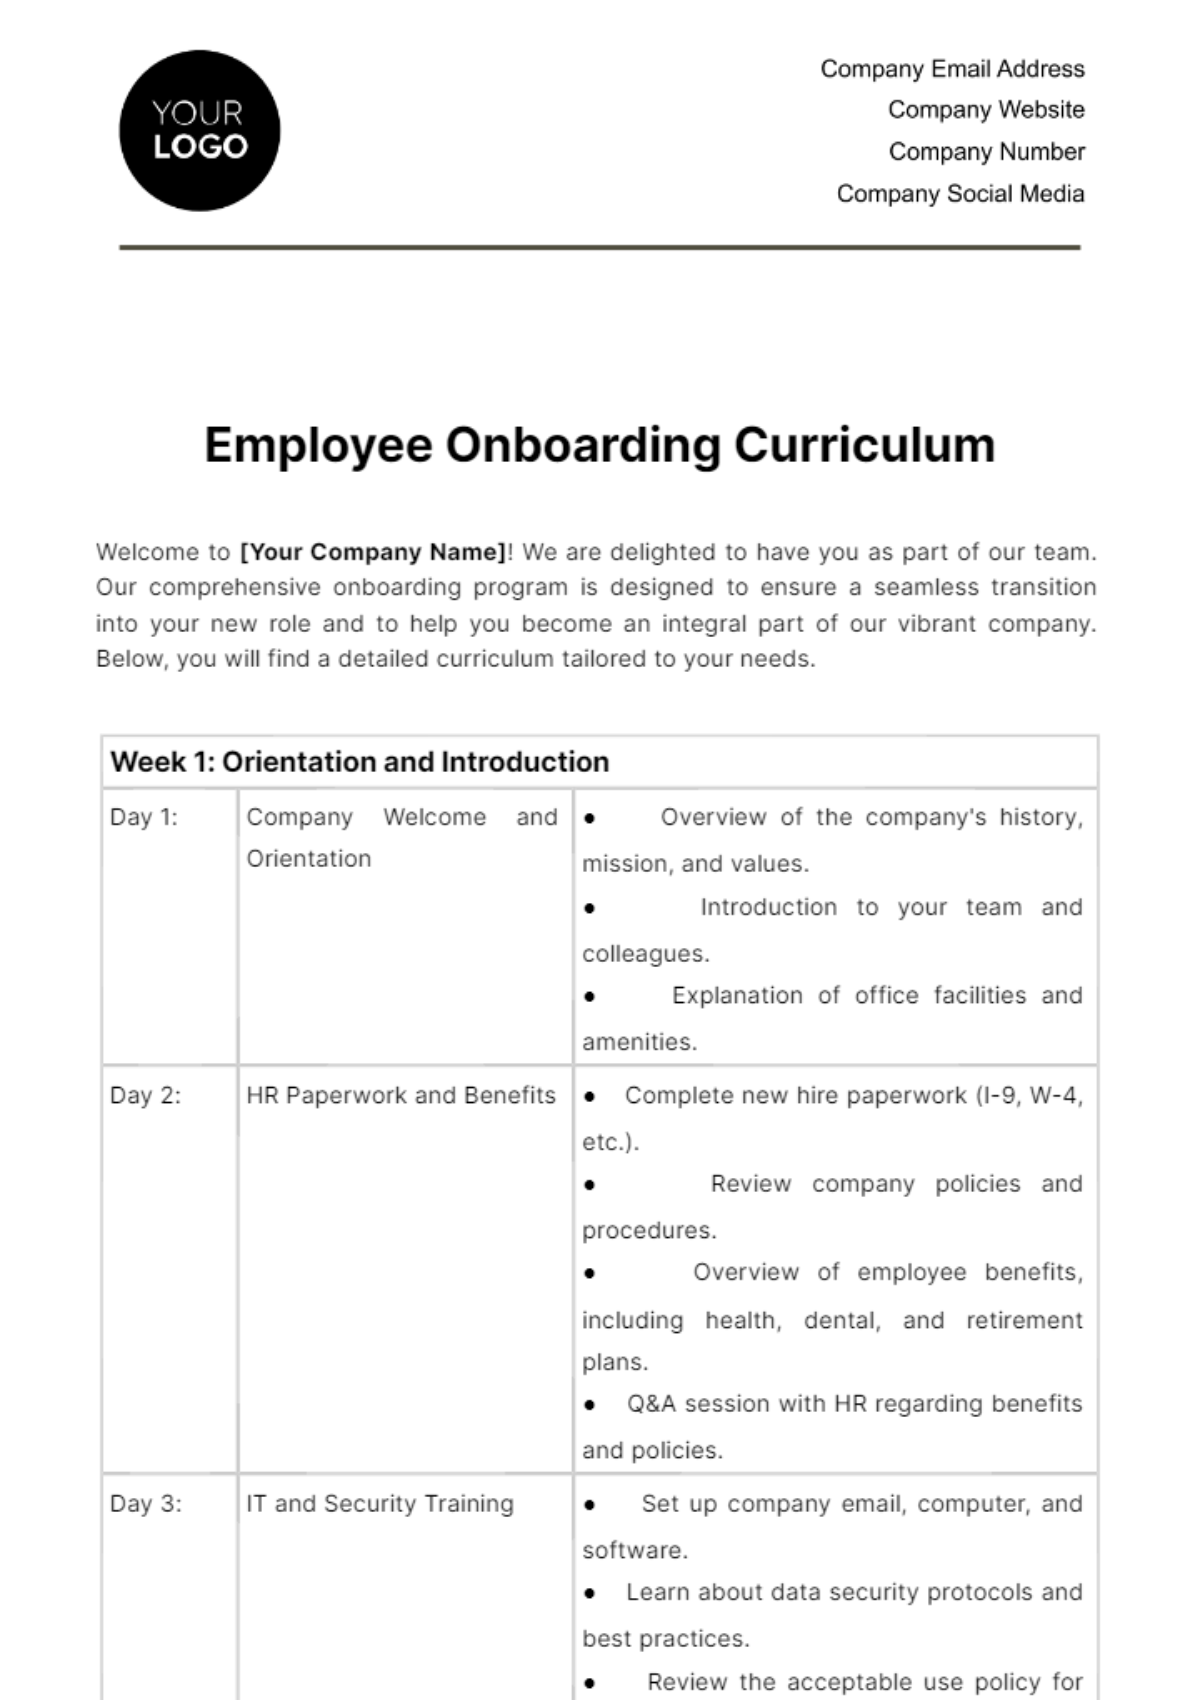 Employee Onboarding Curriculum HR Template